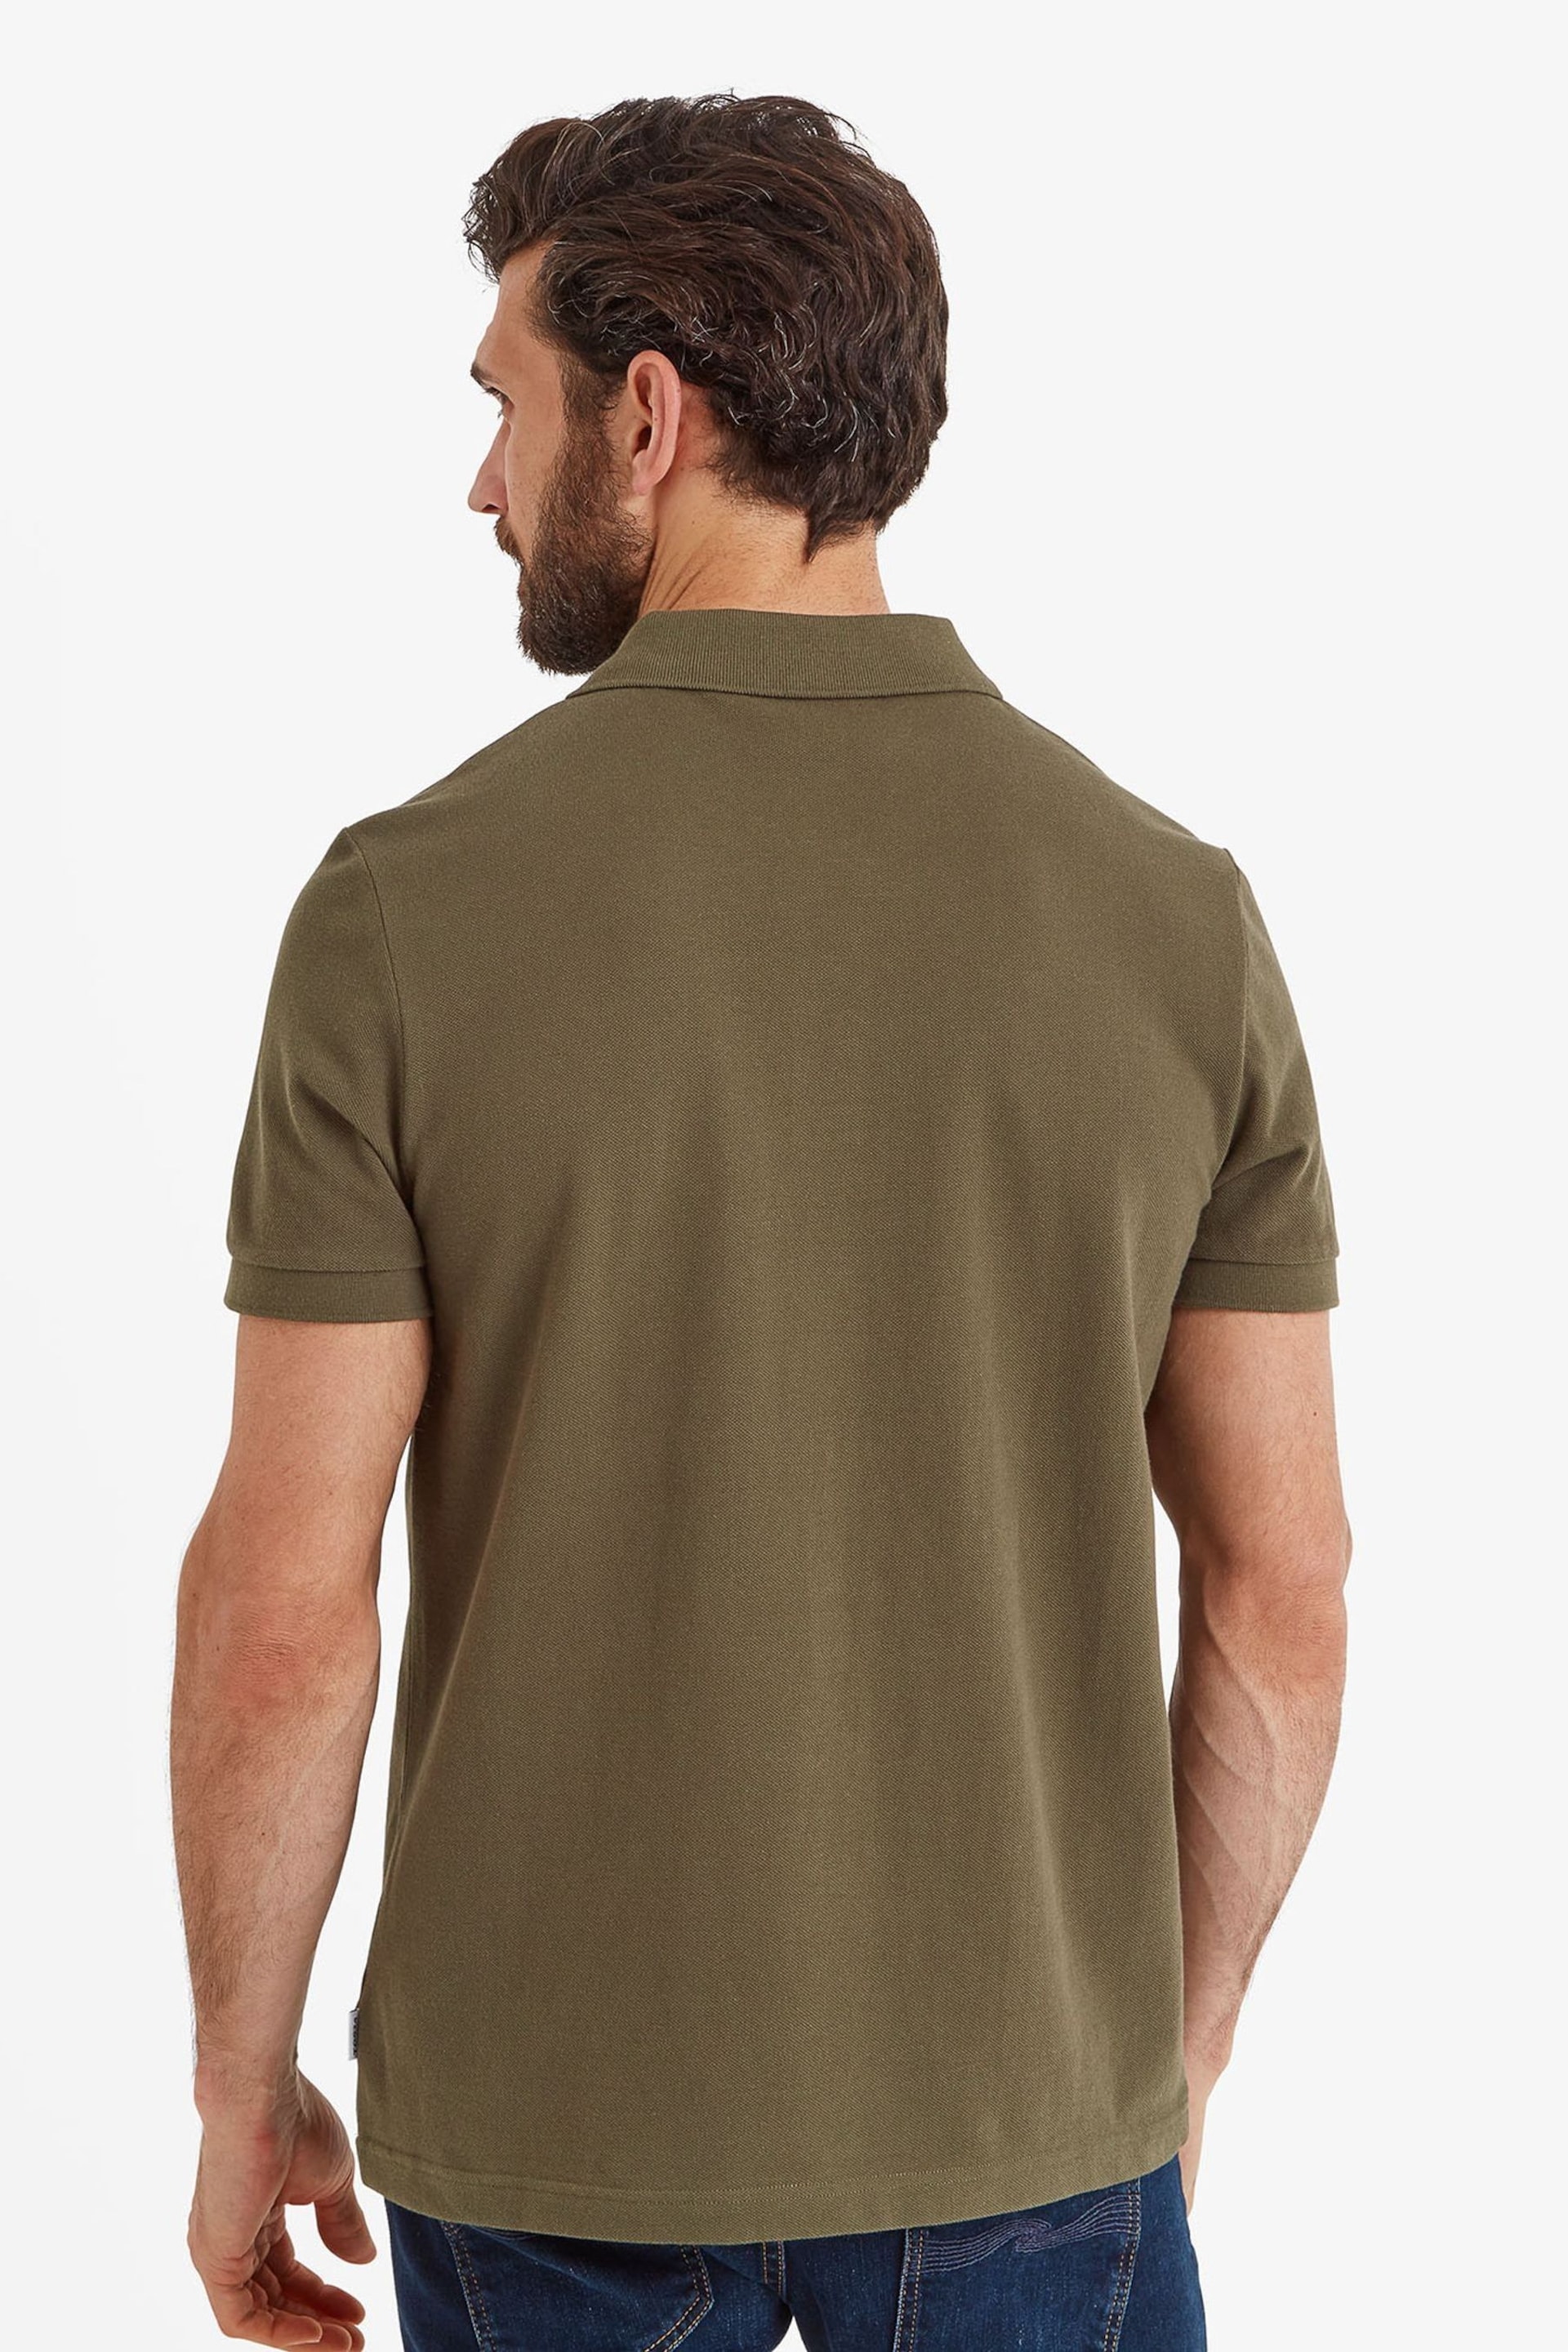 Tog 24 Green Bolton Polo Shirt - Image 2 of 5